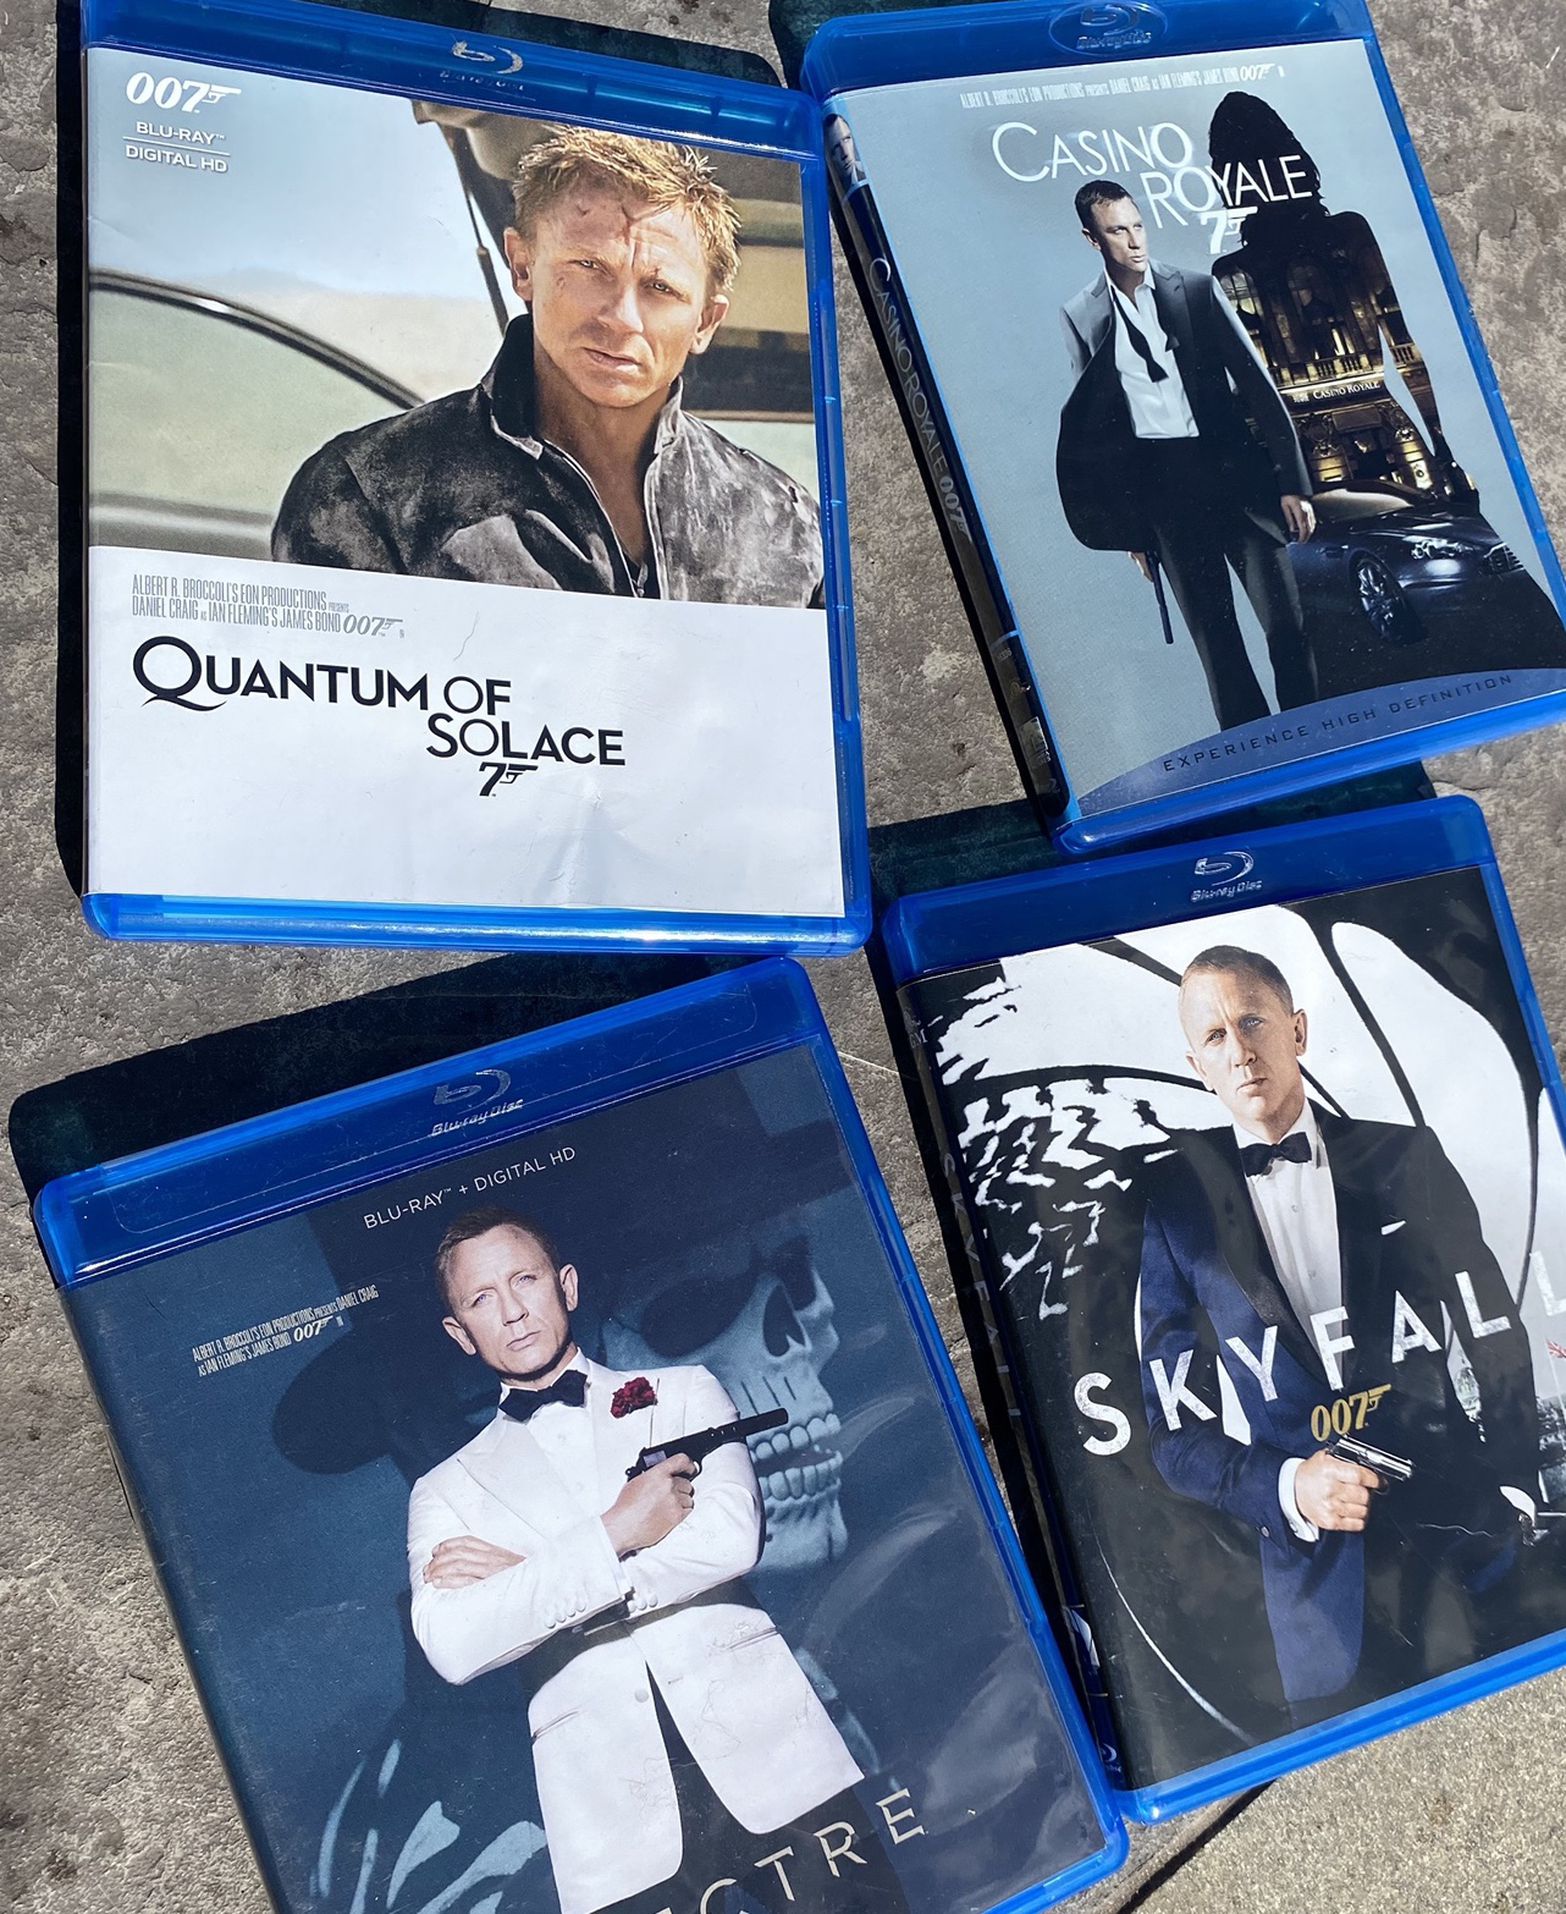 James Bond Blu-ray collection